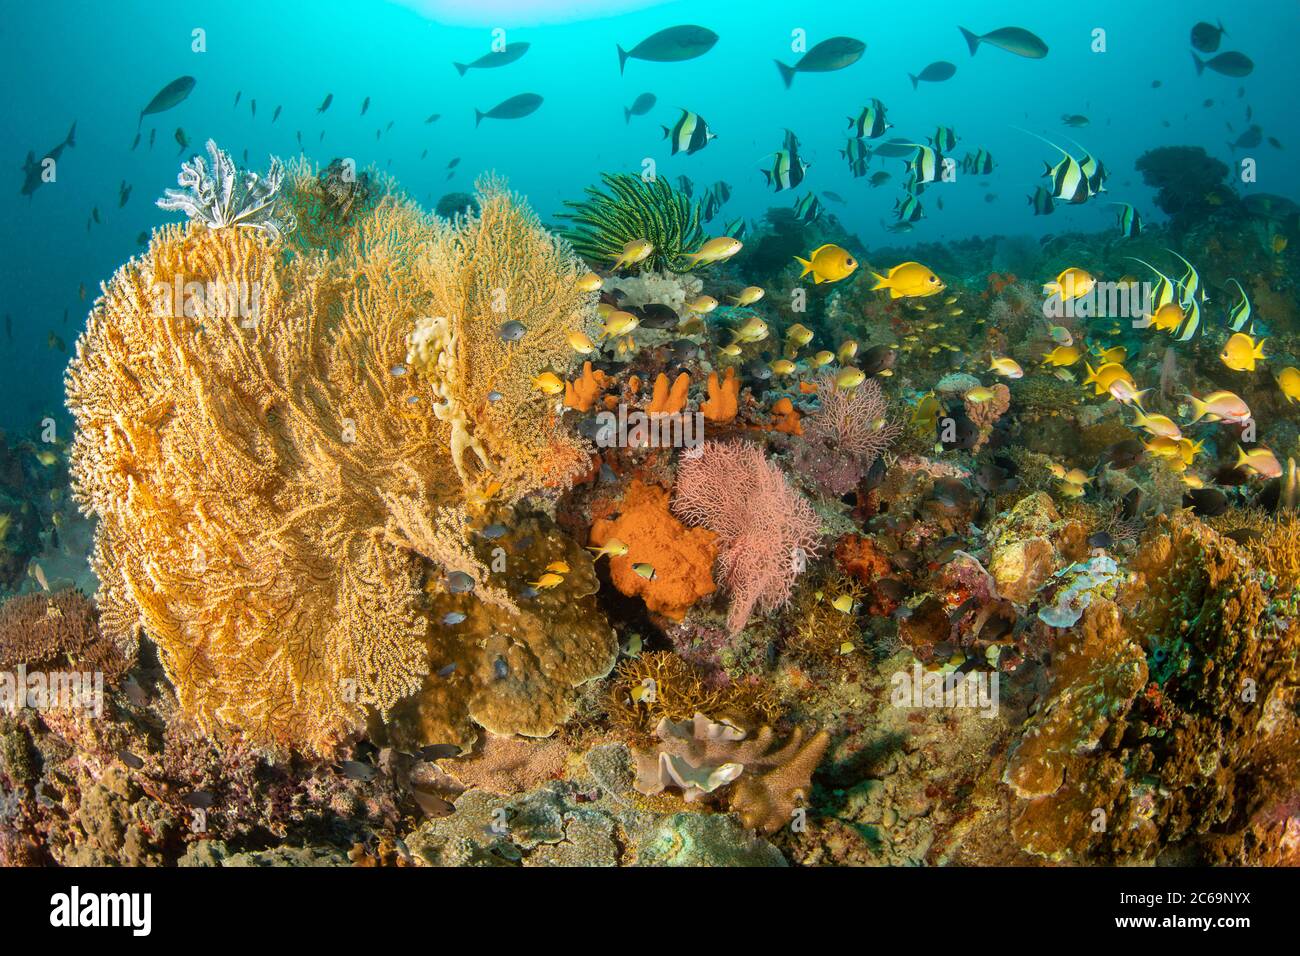 Ein Gorgonien-Korallenfan und zahlreiche scholorene Rifffische füllen diese philippinische Riffszene. Stockfoto